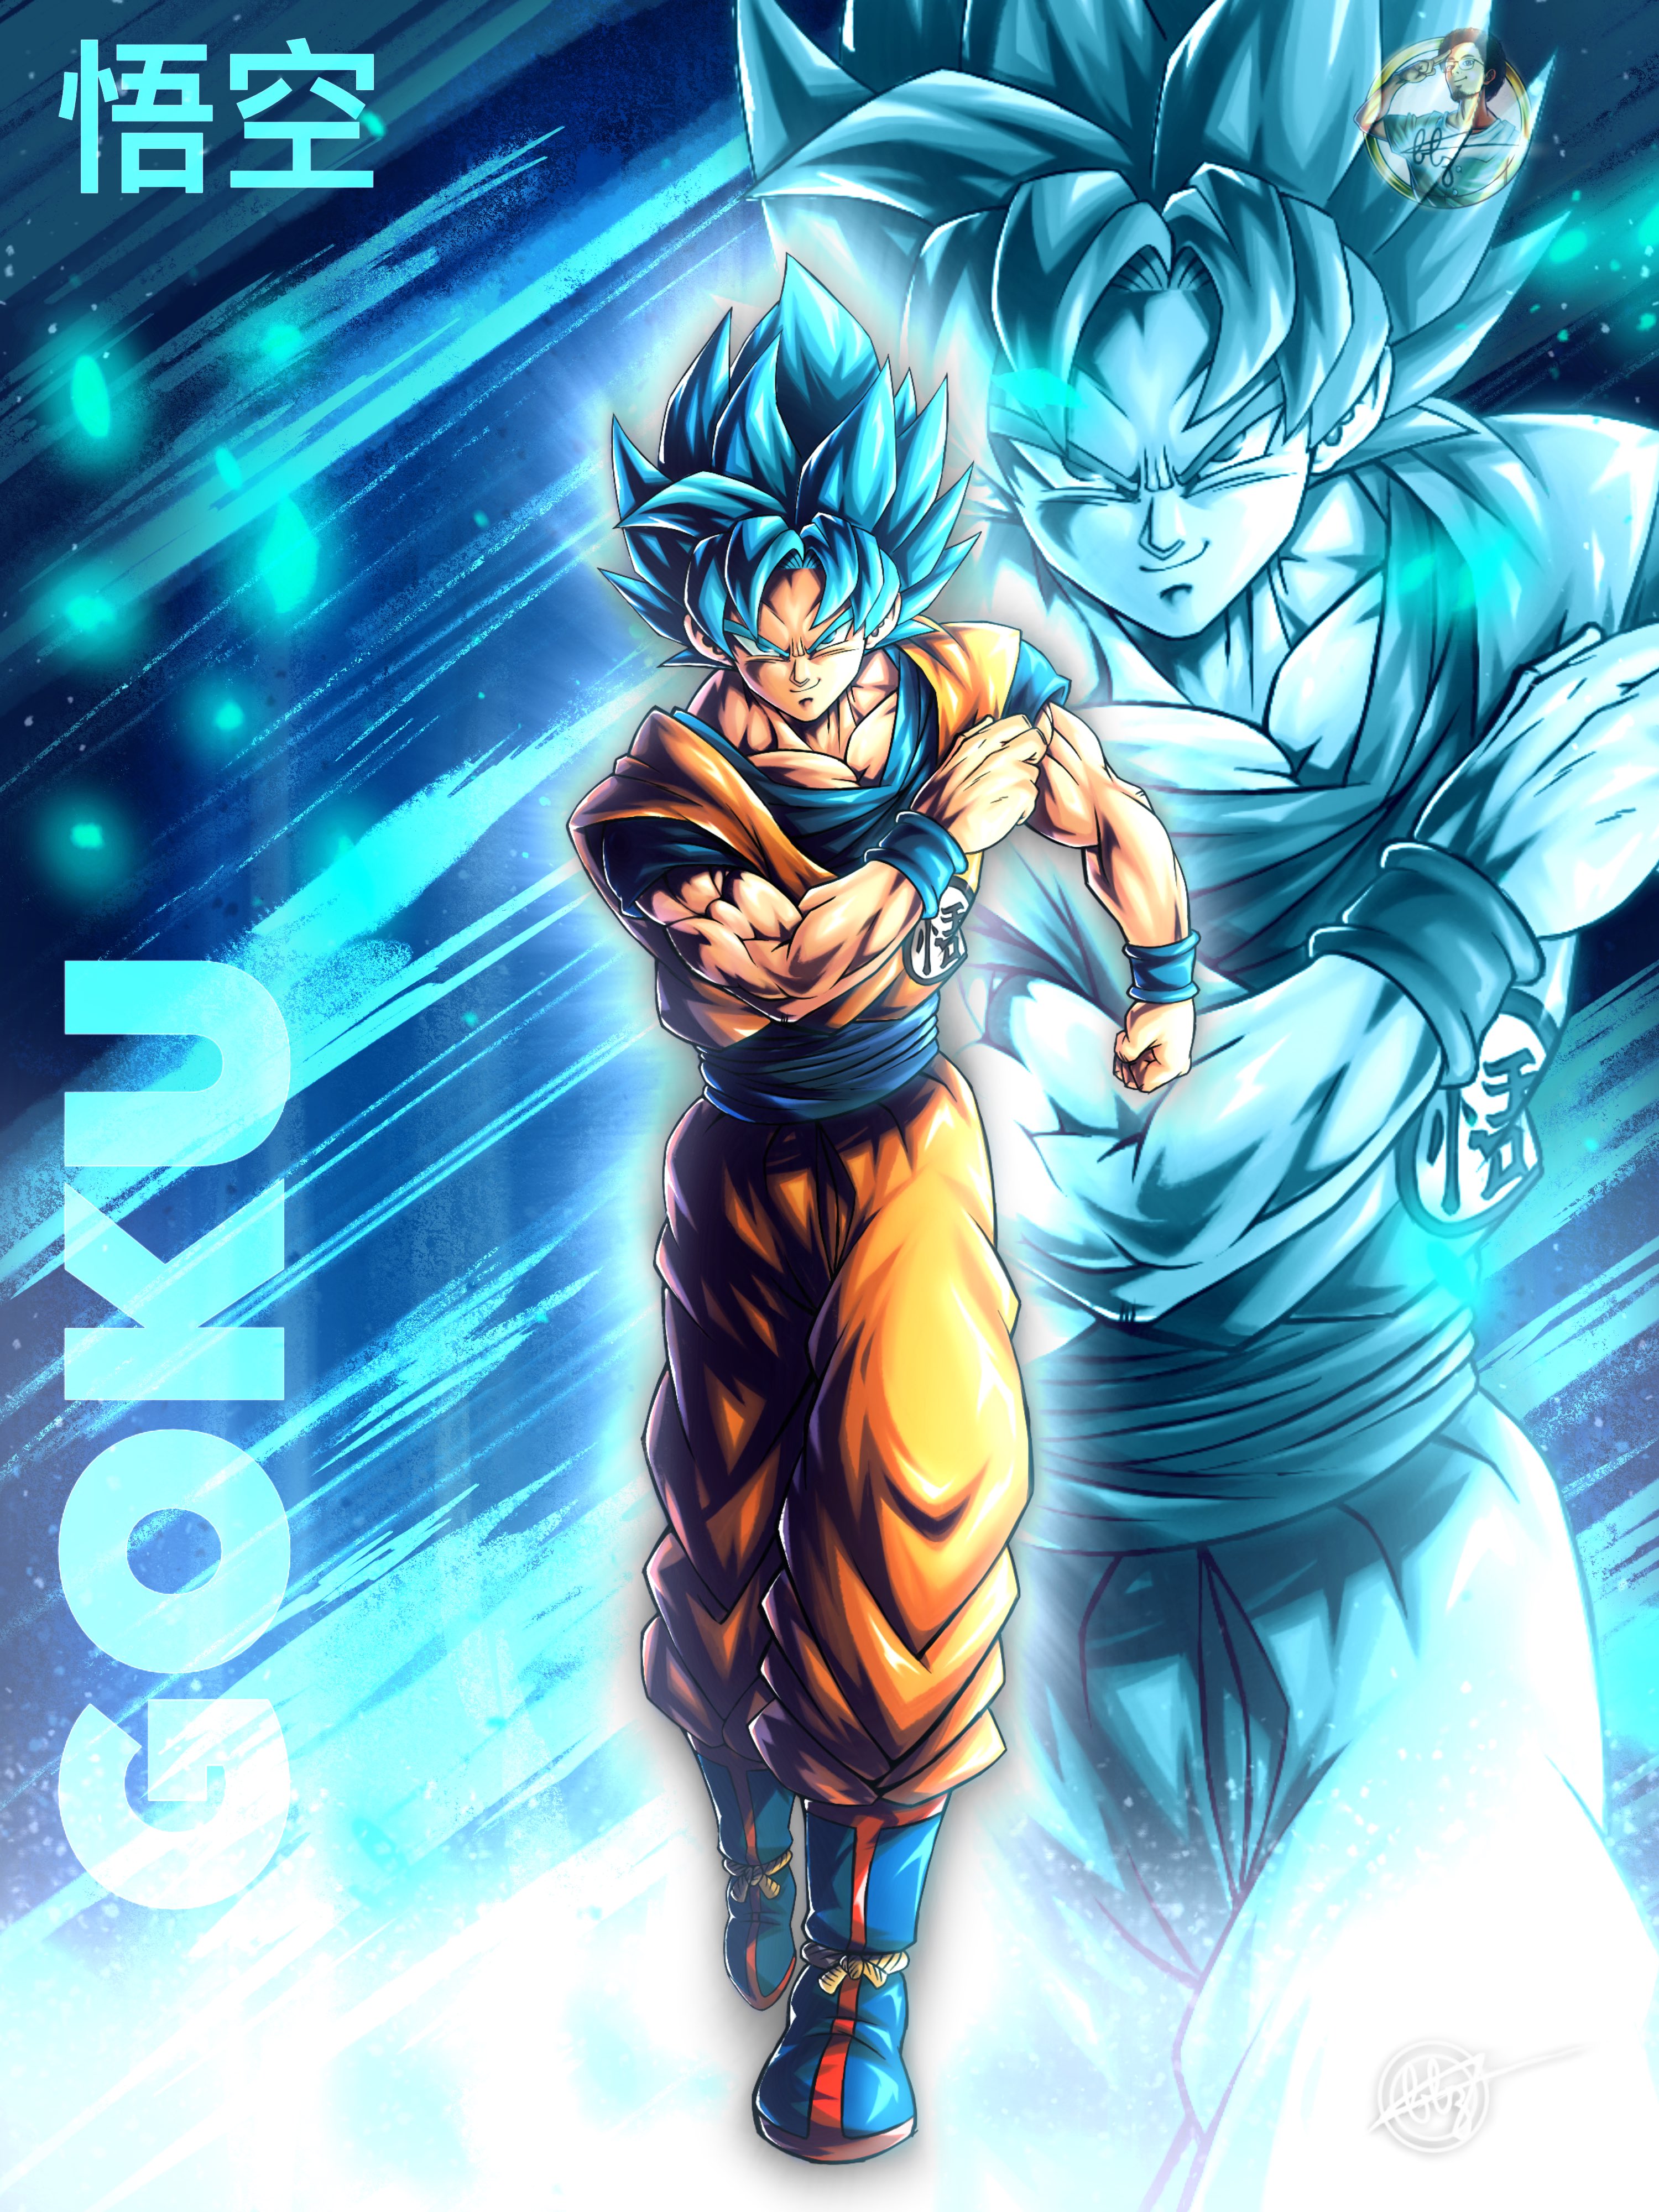 BLZ (COMMS LIVE) on X: Goku. Super Saiyan God or Super Saiyan